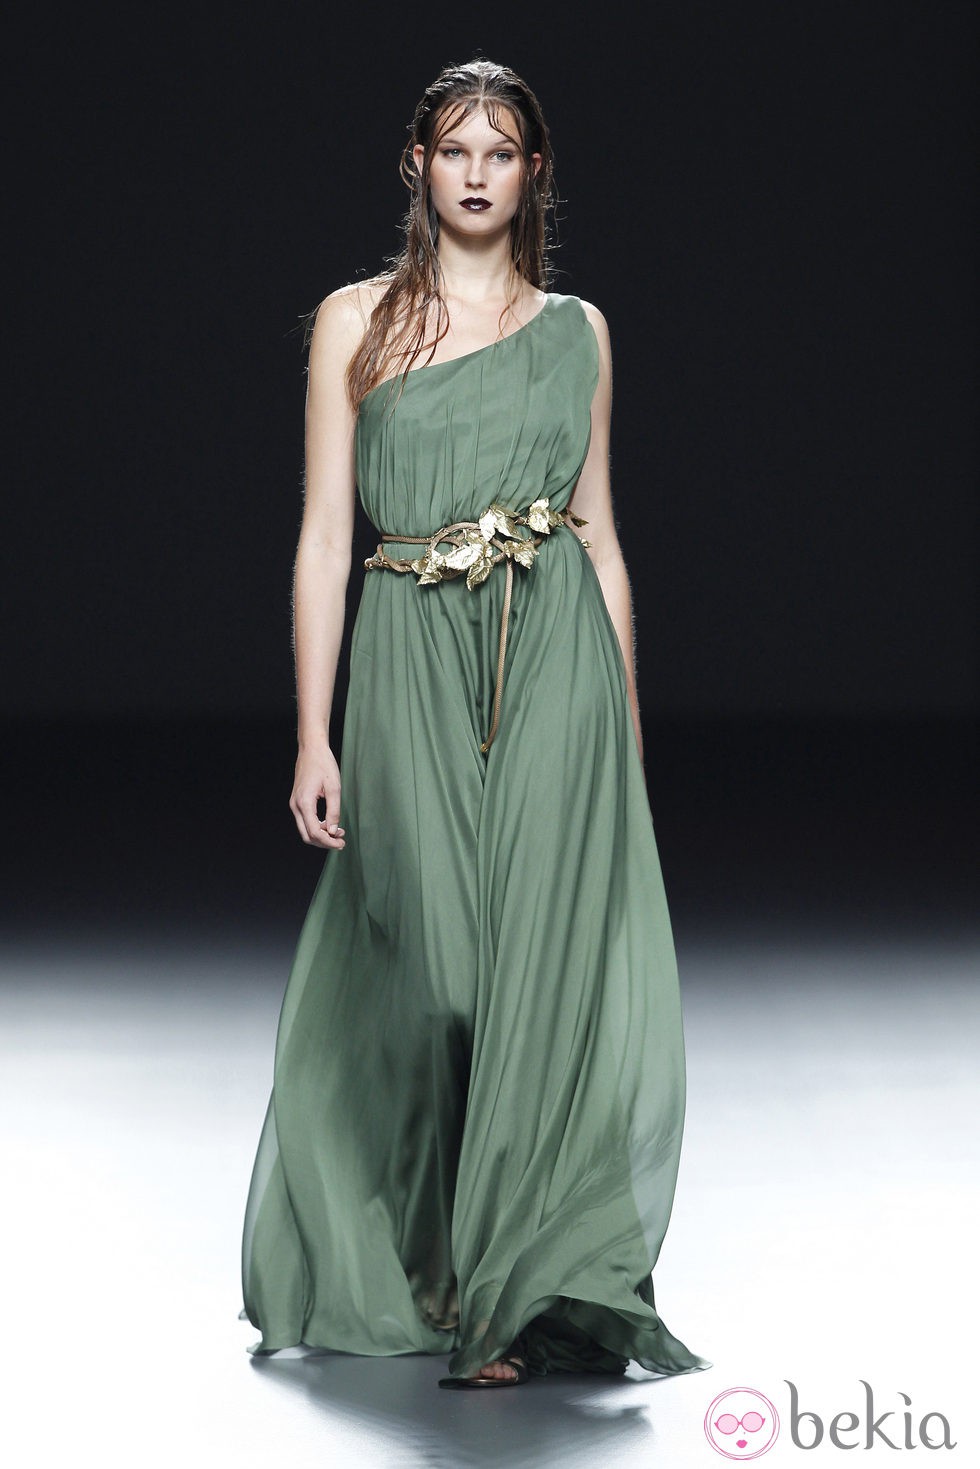 Vestido asimétrico de la colección primavera/verano 2014 de María Barros en Madrid Fashion Week